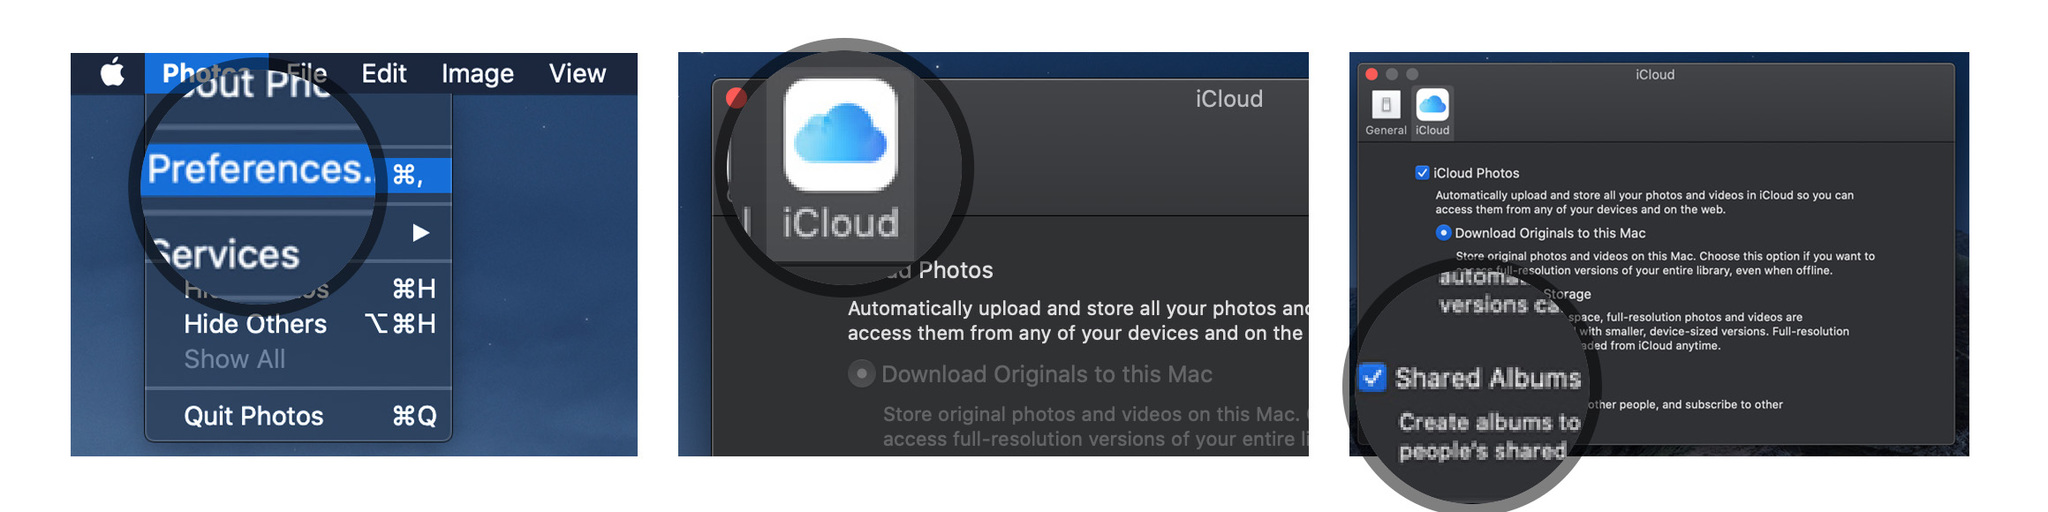 Включите «Фото iCloud» на Mac, показывая шаги. Запустите приложение «Фото» на Mac, выберите «Фото» в меню приложения в верхнем левом углу, выберите «Настройки» в раскрывающемся меню, выберите вкладку «iCloud», установите флажок «Фото iCloud», установите флажок коробка для общих альбомов.